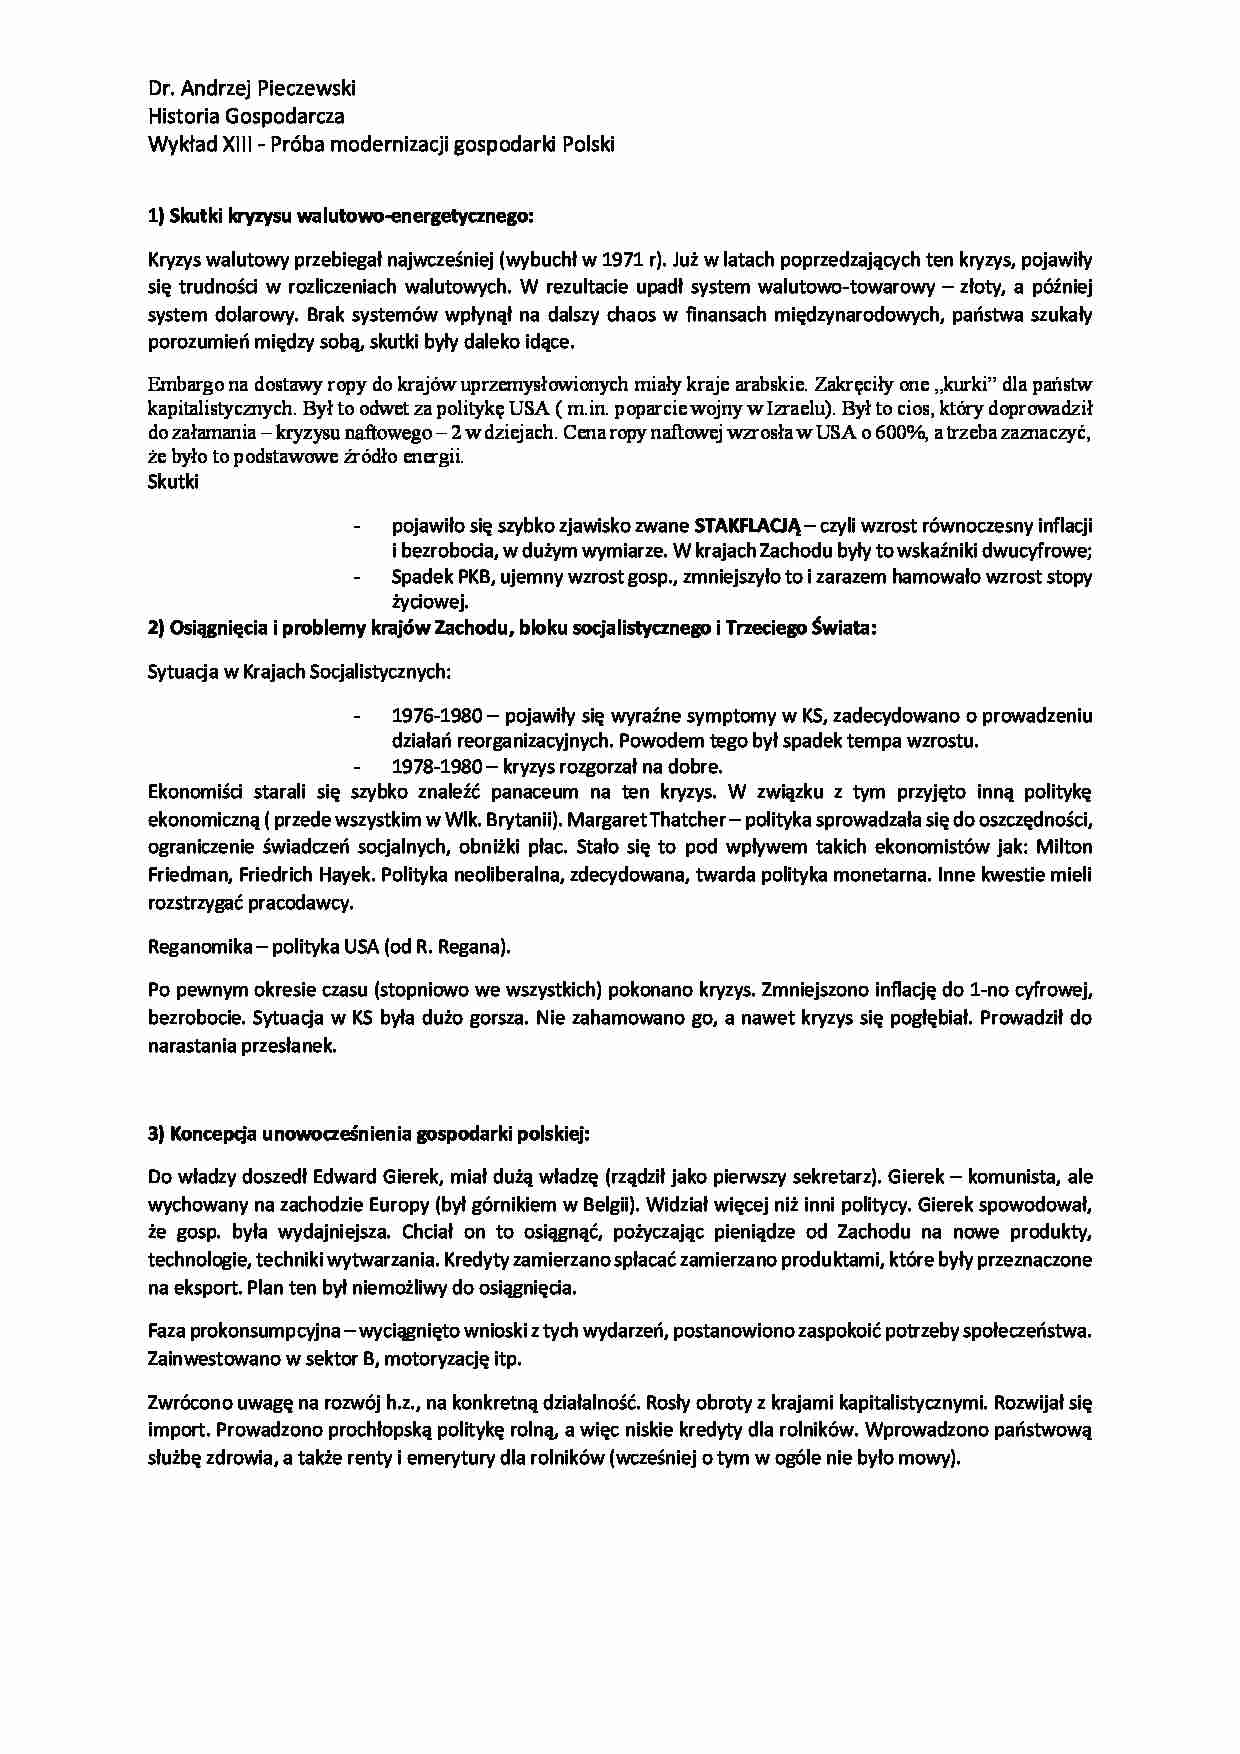 Próba modernizacji gospodarki Polski-opracowanie - strona 1